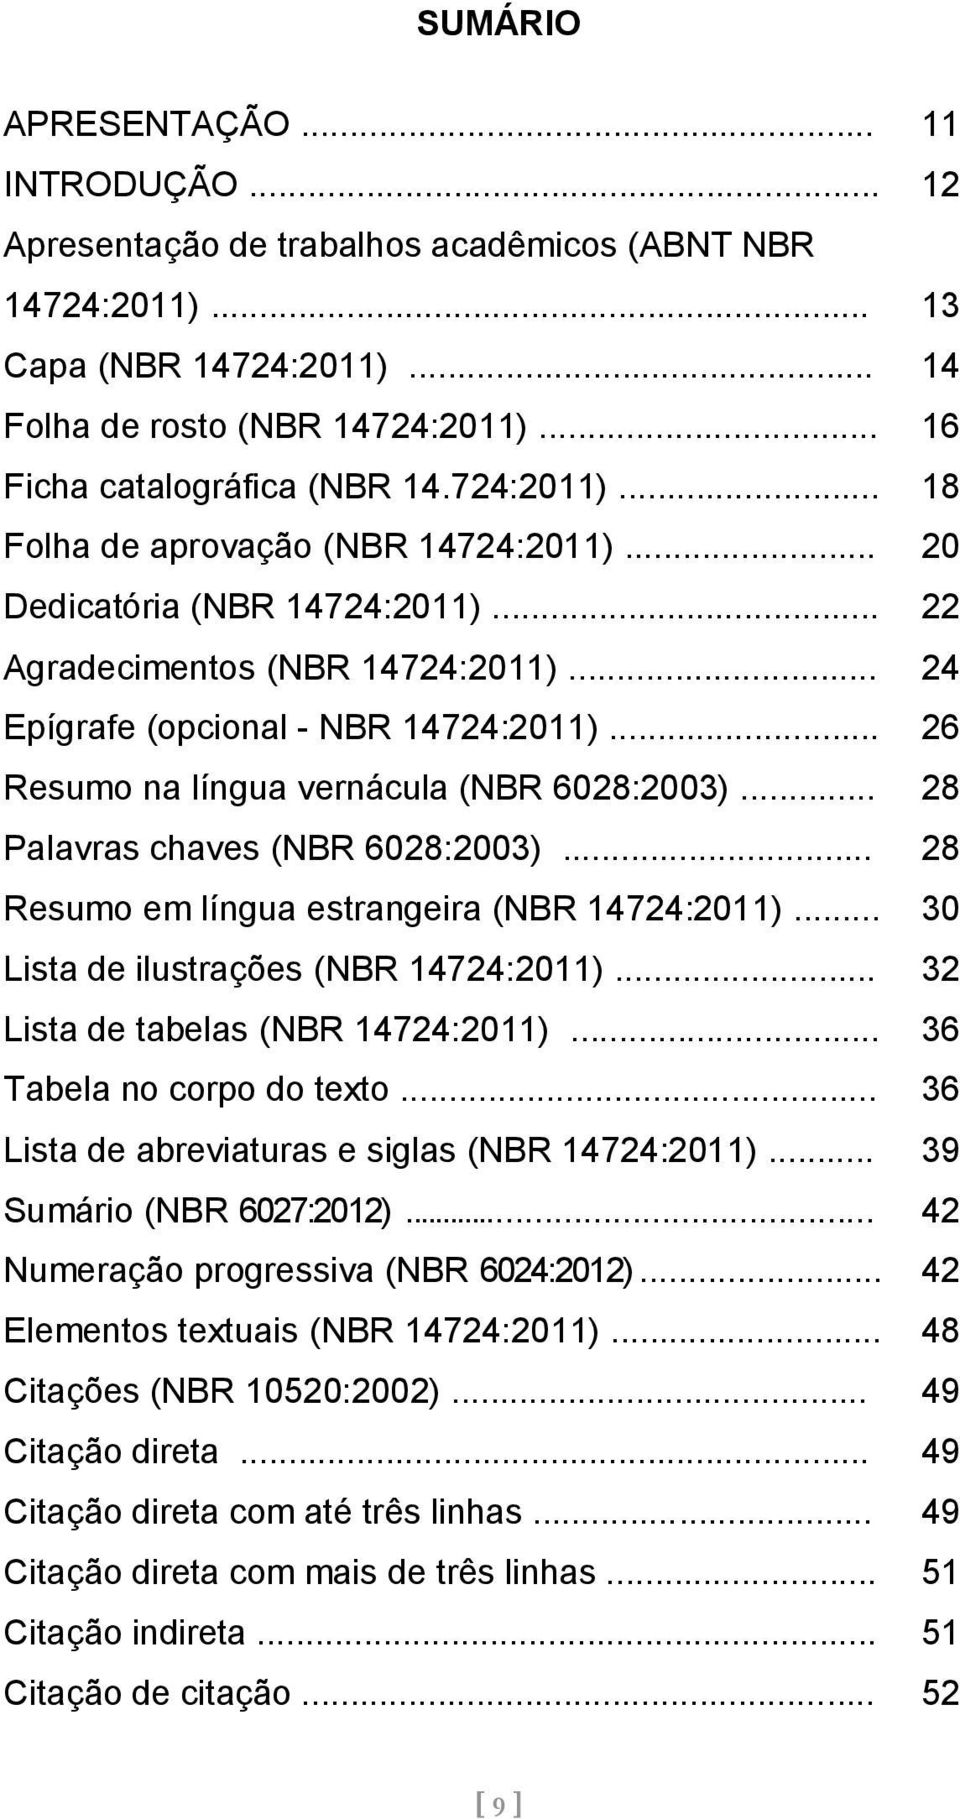 .. 26 Resumo na língua vernácula (NBR 6028:2003)... 28 Palavras chaves (NBR 6028:2003)... 28 Resumo em língua estrangeira (NBR 14724:2011)... 30 Lista de ilustrações (NBR 14724:2011).